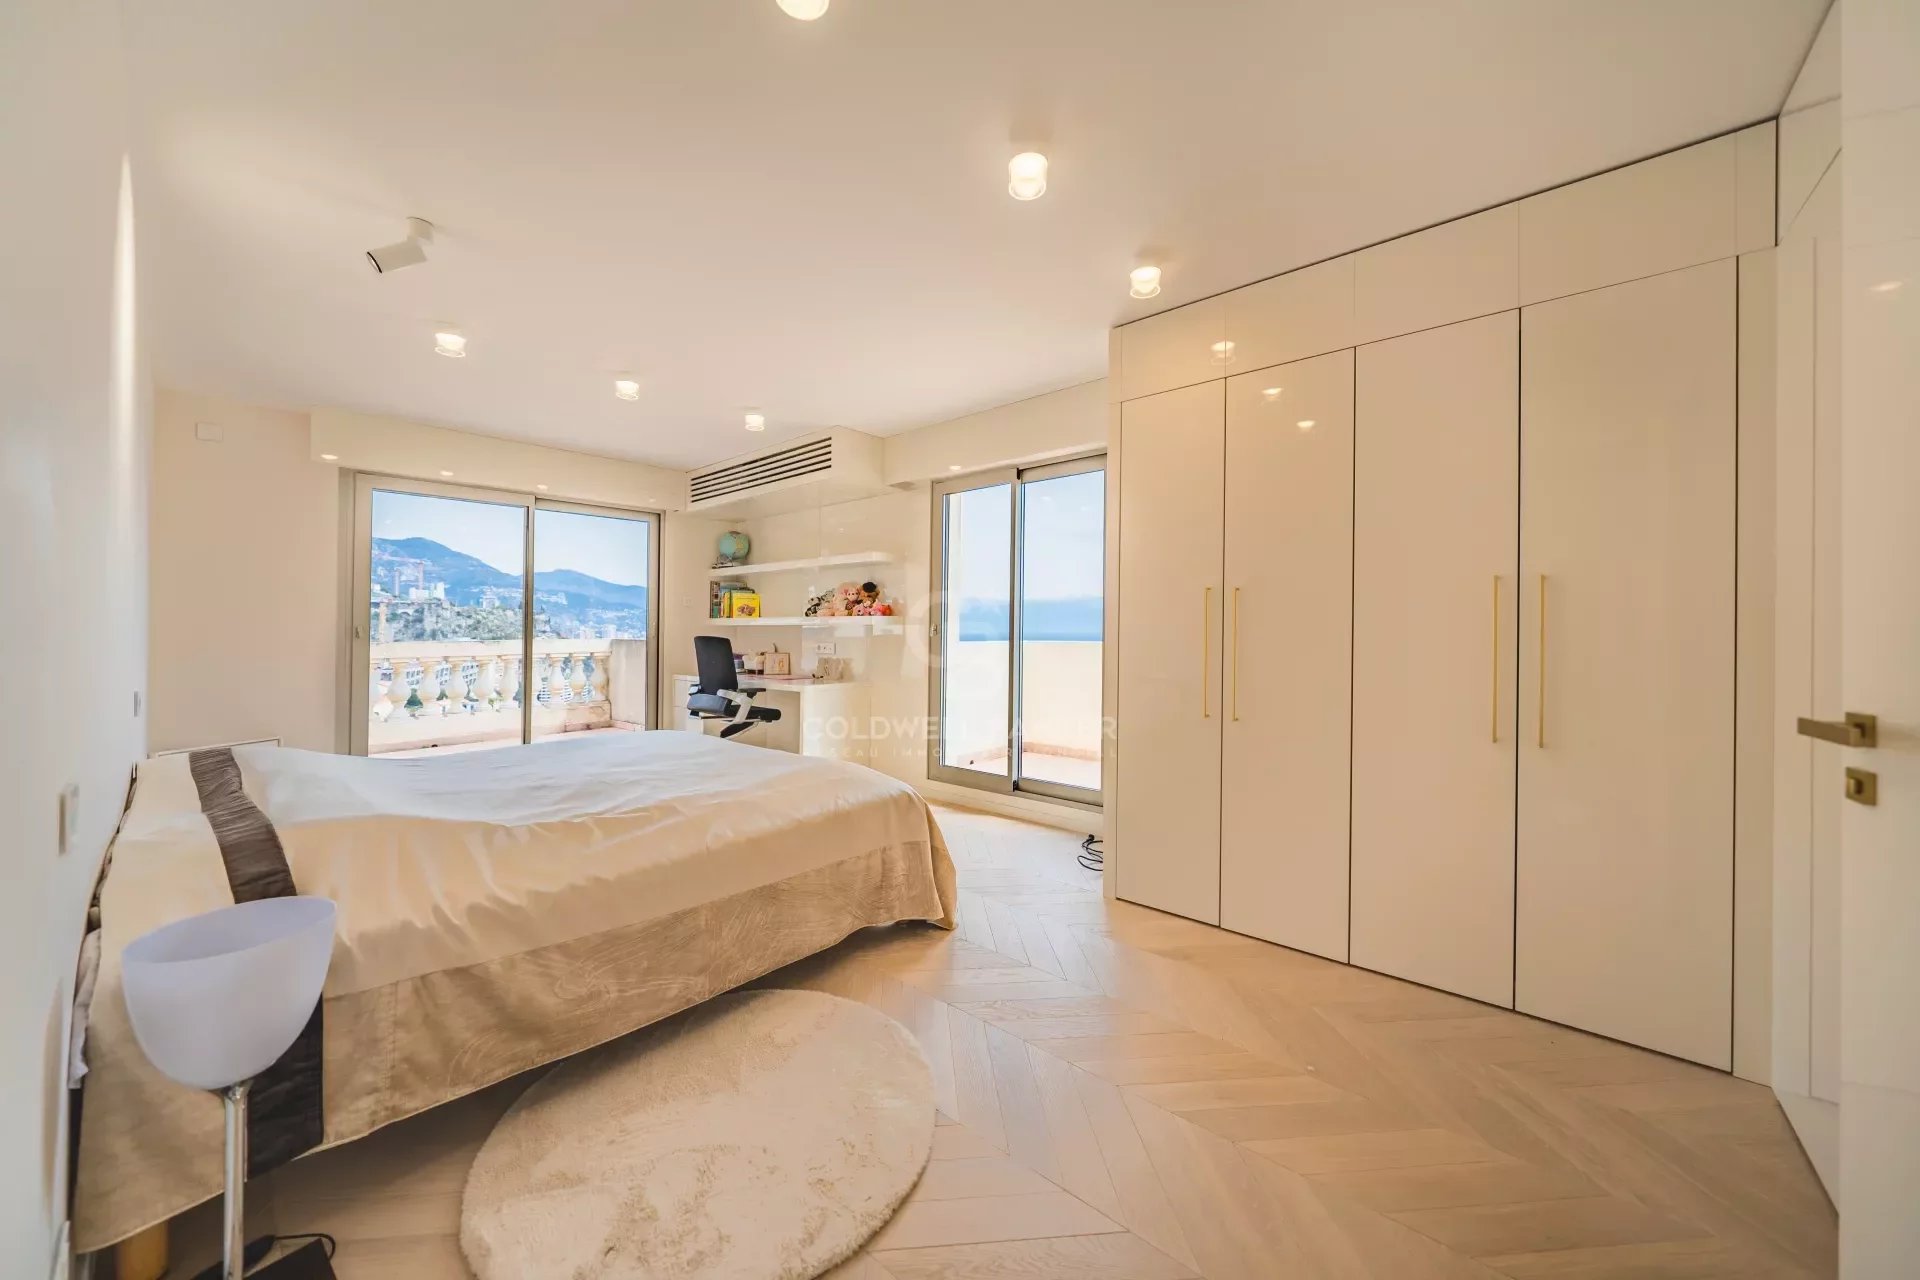 Sublime appartement a vendre avec vue mer panoramique sur Monaco! Unique sur le marché!